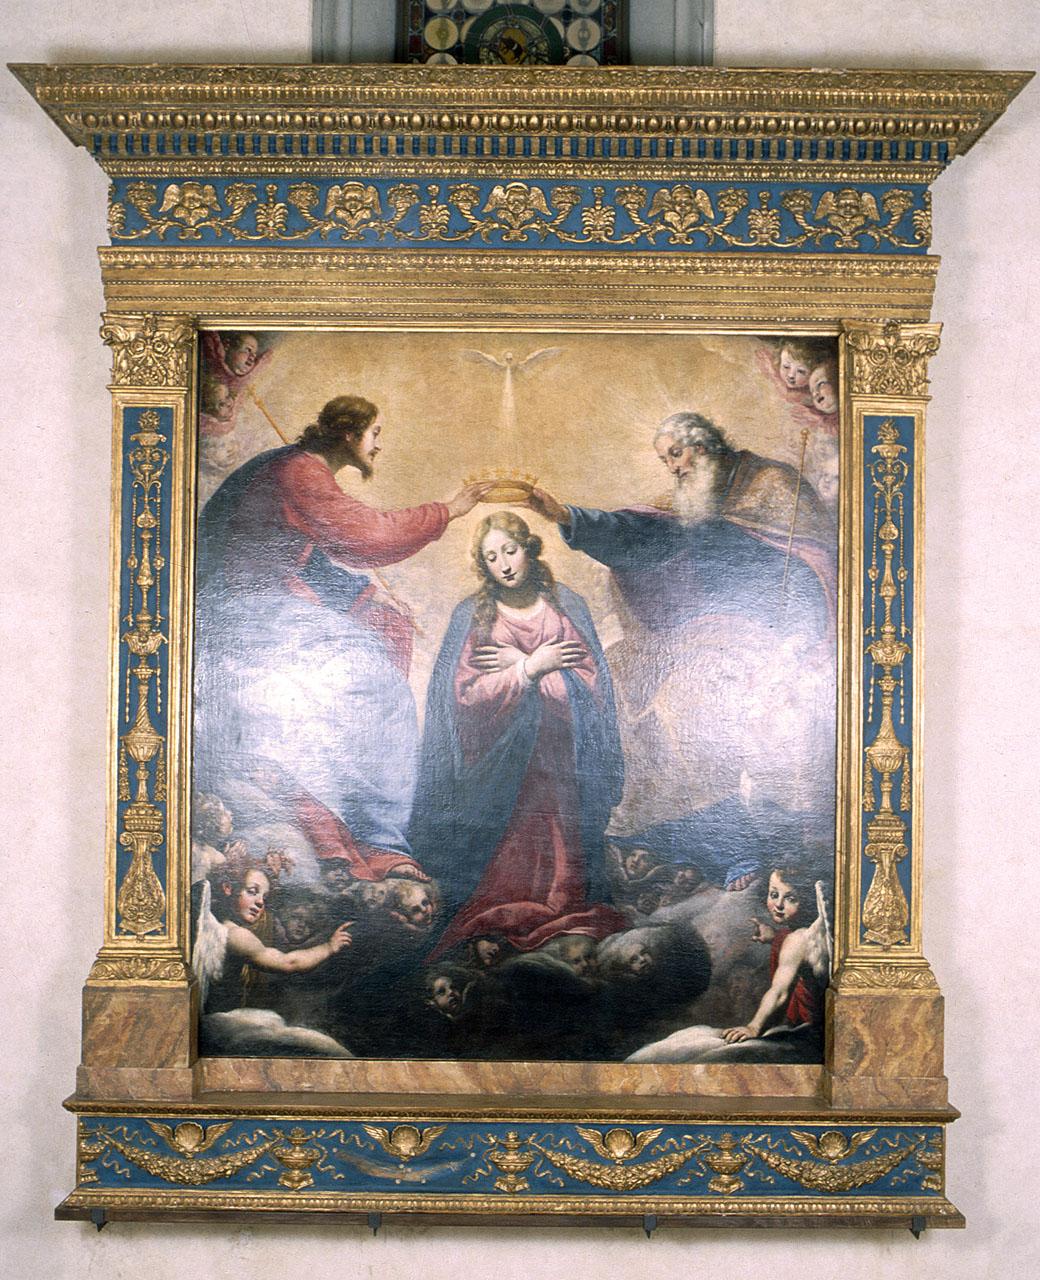 stemma gentilizio della famiglia Medici (cornice) - manifattura toscana (sec. XV)